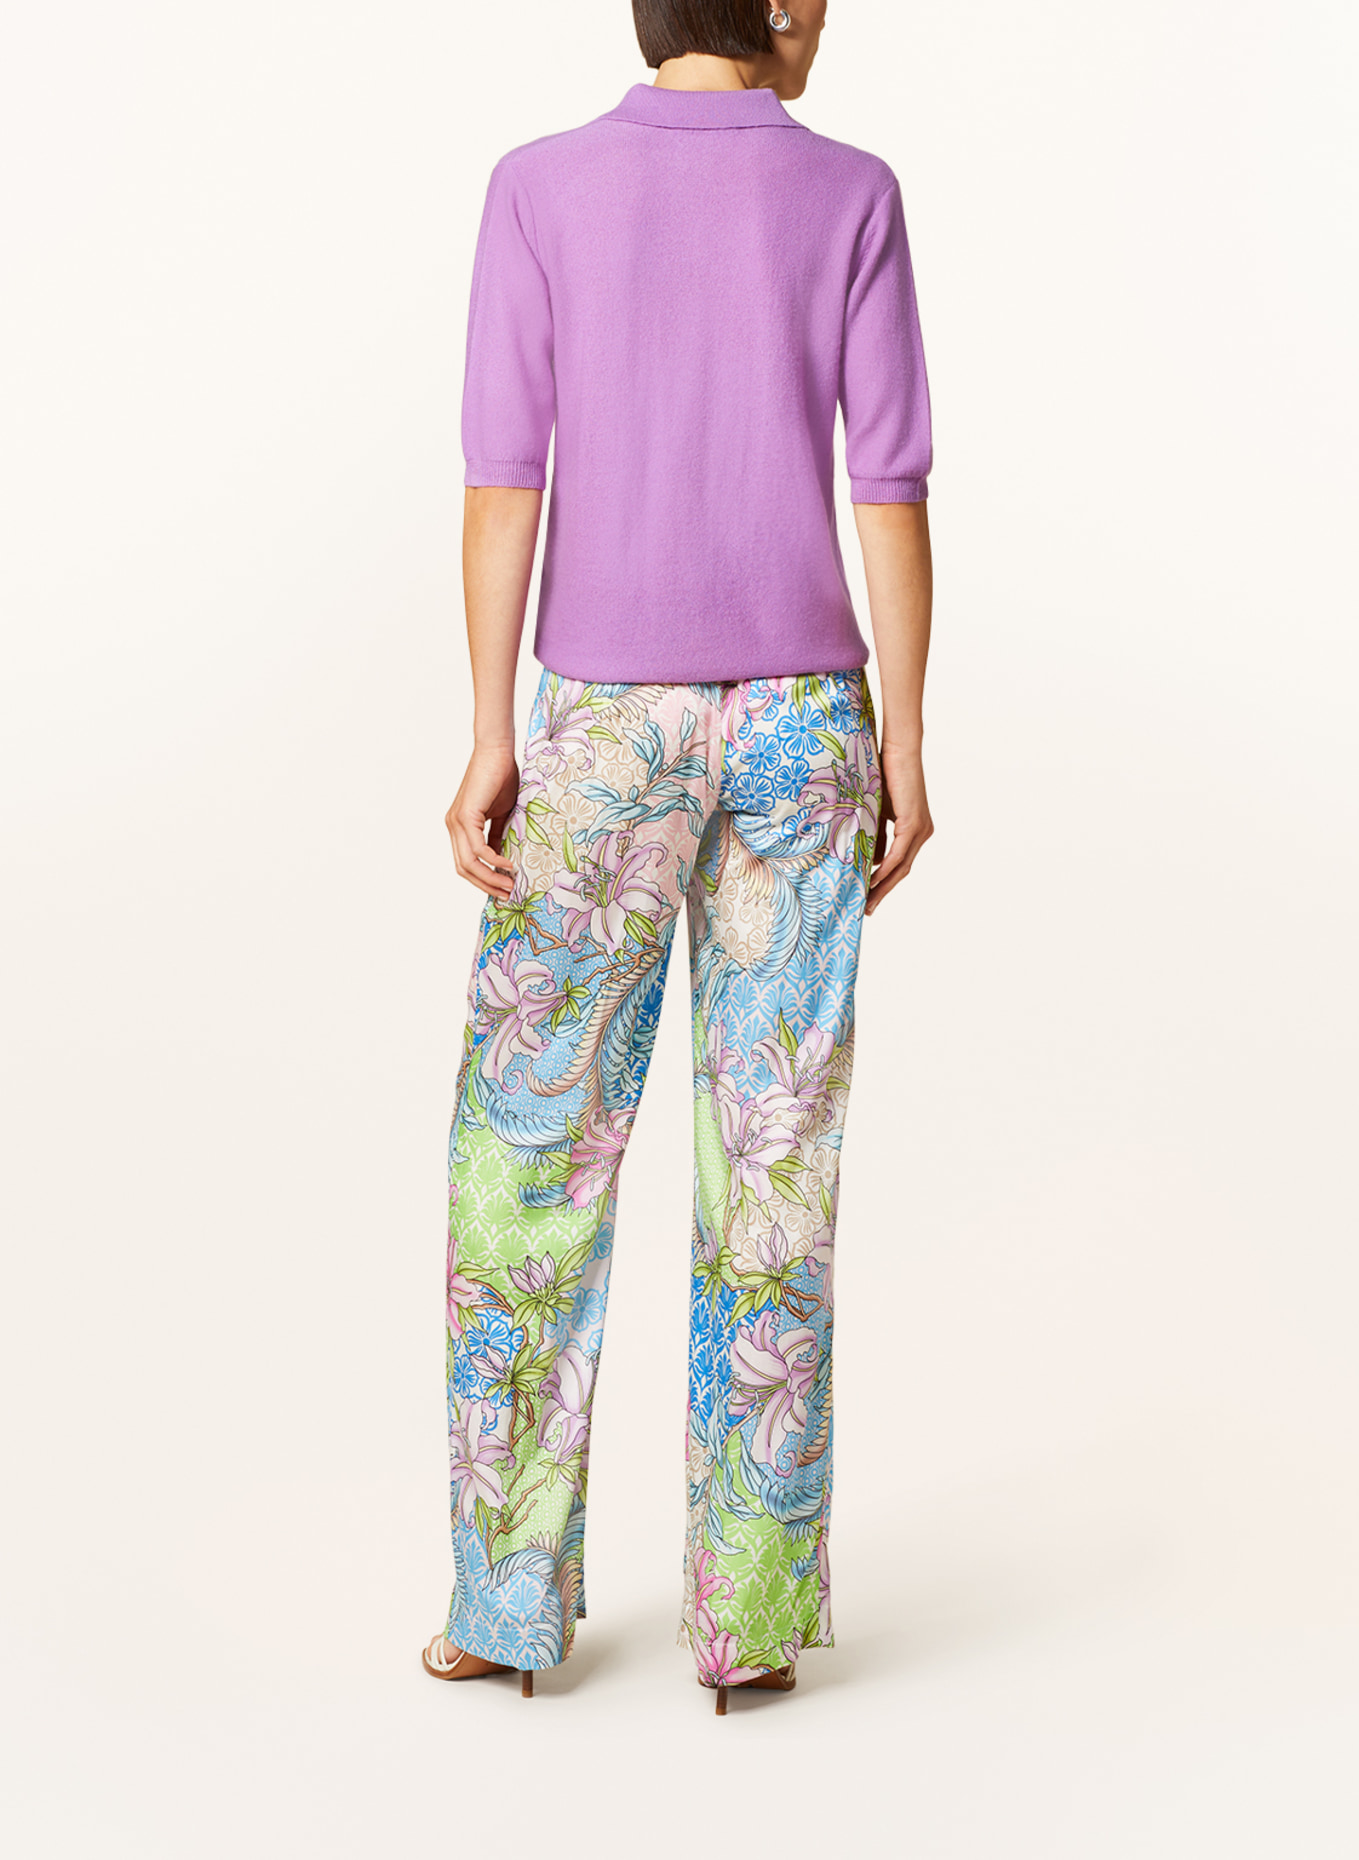 SEM PER LEI Cardigan with cashmere, Color: PURPLE (Image 3)